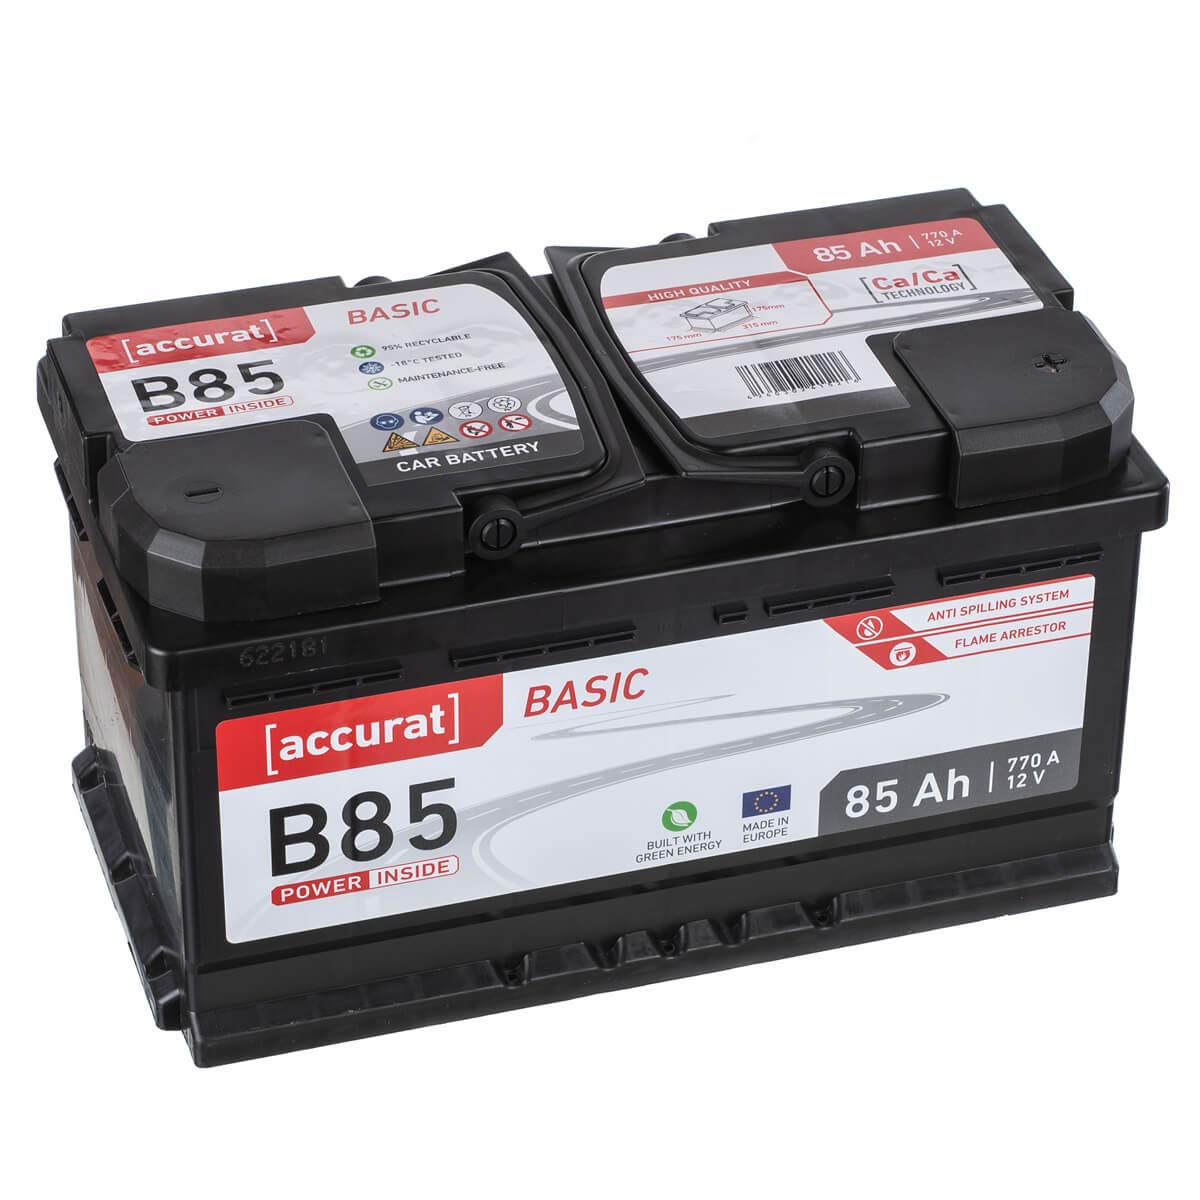 Accurat Basic B85 Autobatterie - 12V, 85Ah, 770A, zyklenfest, wartungsfrei, 30% mehr Startleistung, Ca-Technologie, Pluspol rechts- Starterbatterie, Nassbatterie, Blei-Säure Batterie von Accurat